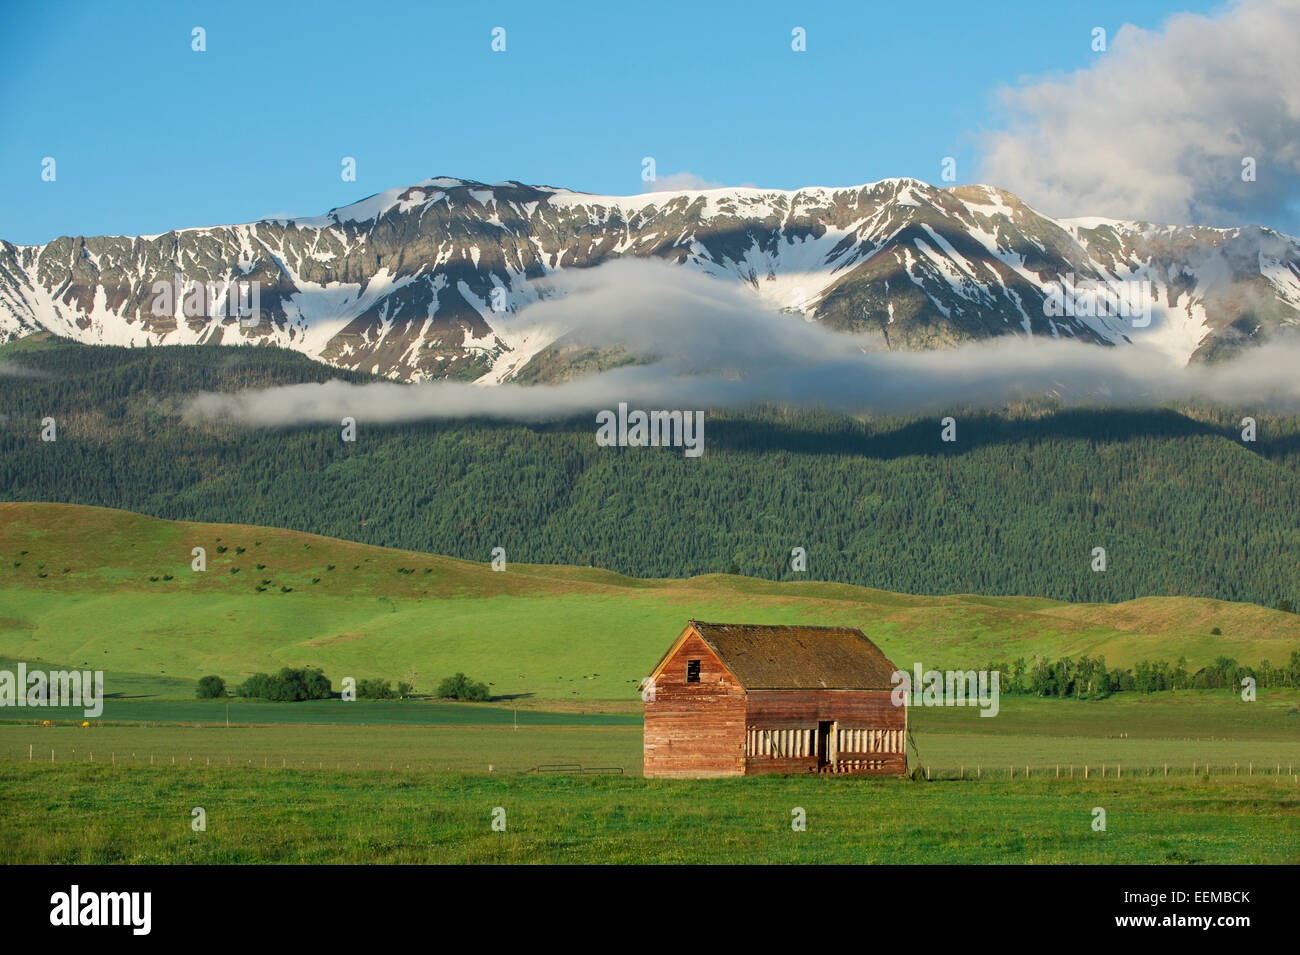 Berge über Scheune in ländlichen Landschaft Stockfoto